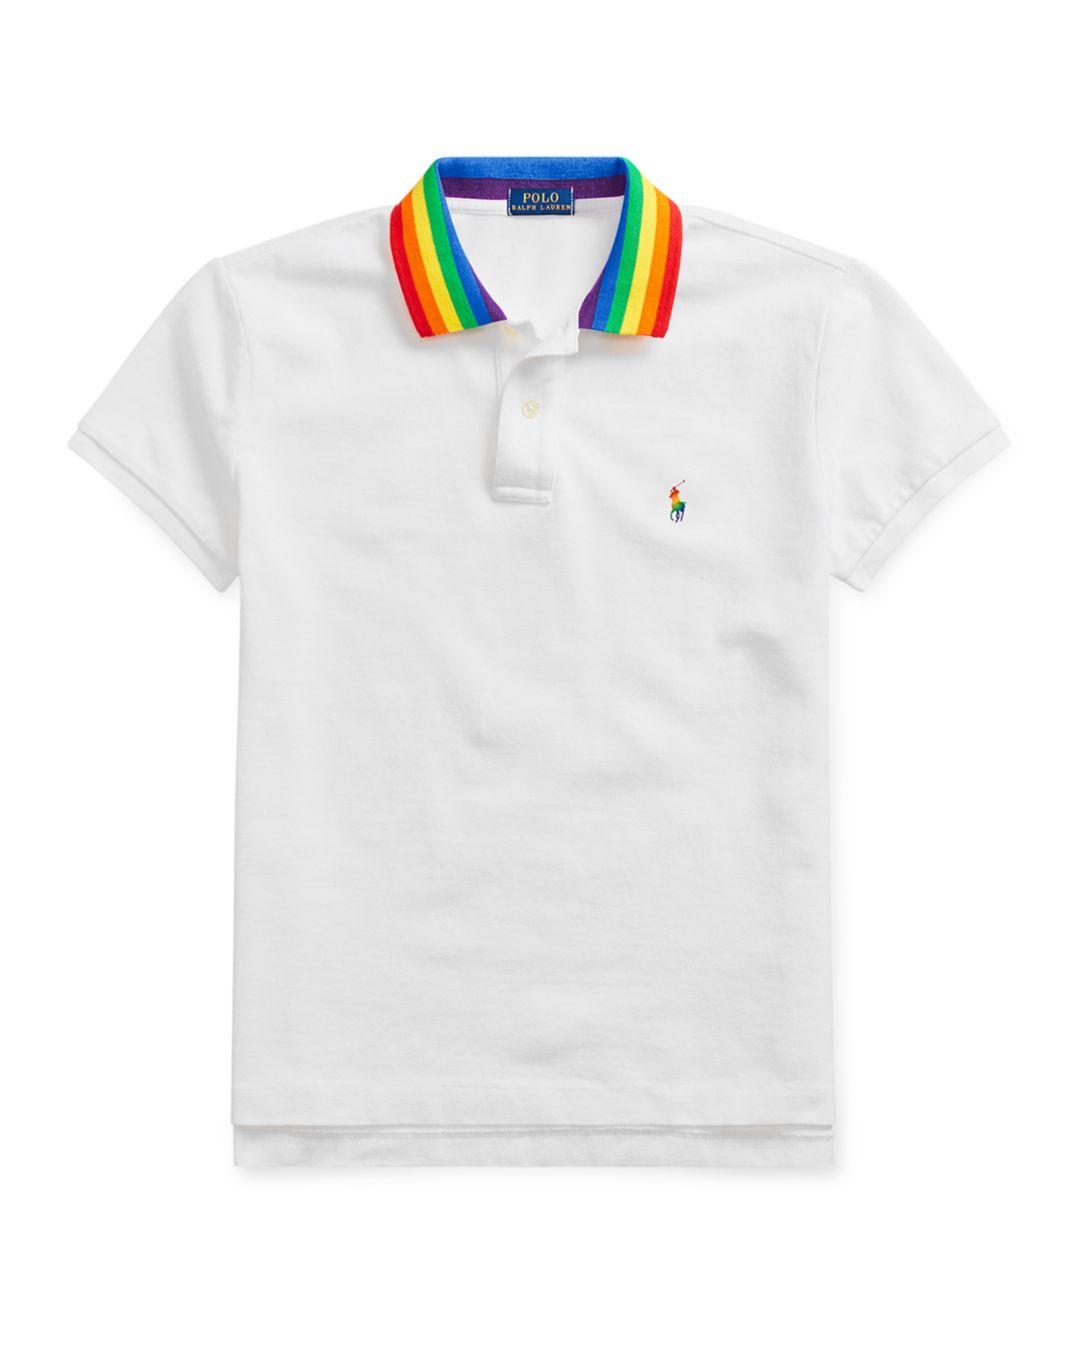 Rainbow Polo Shirt Ralph Lauren Factory Sale, SAVE 50% -  loutzenhiserfuneralhomes.com